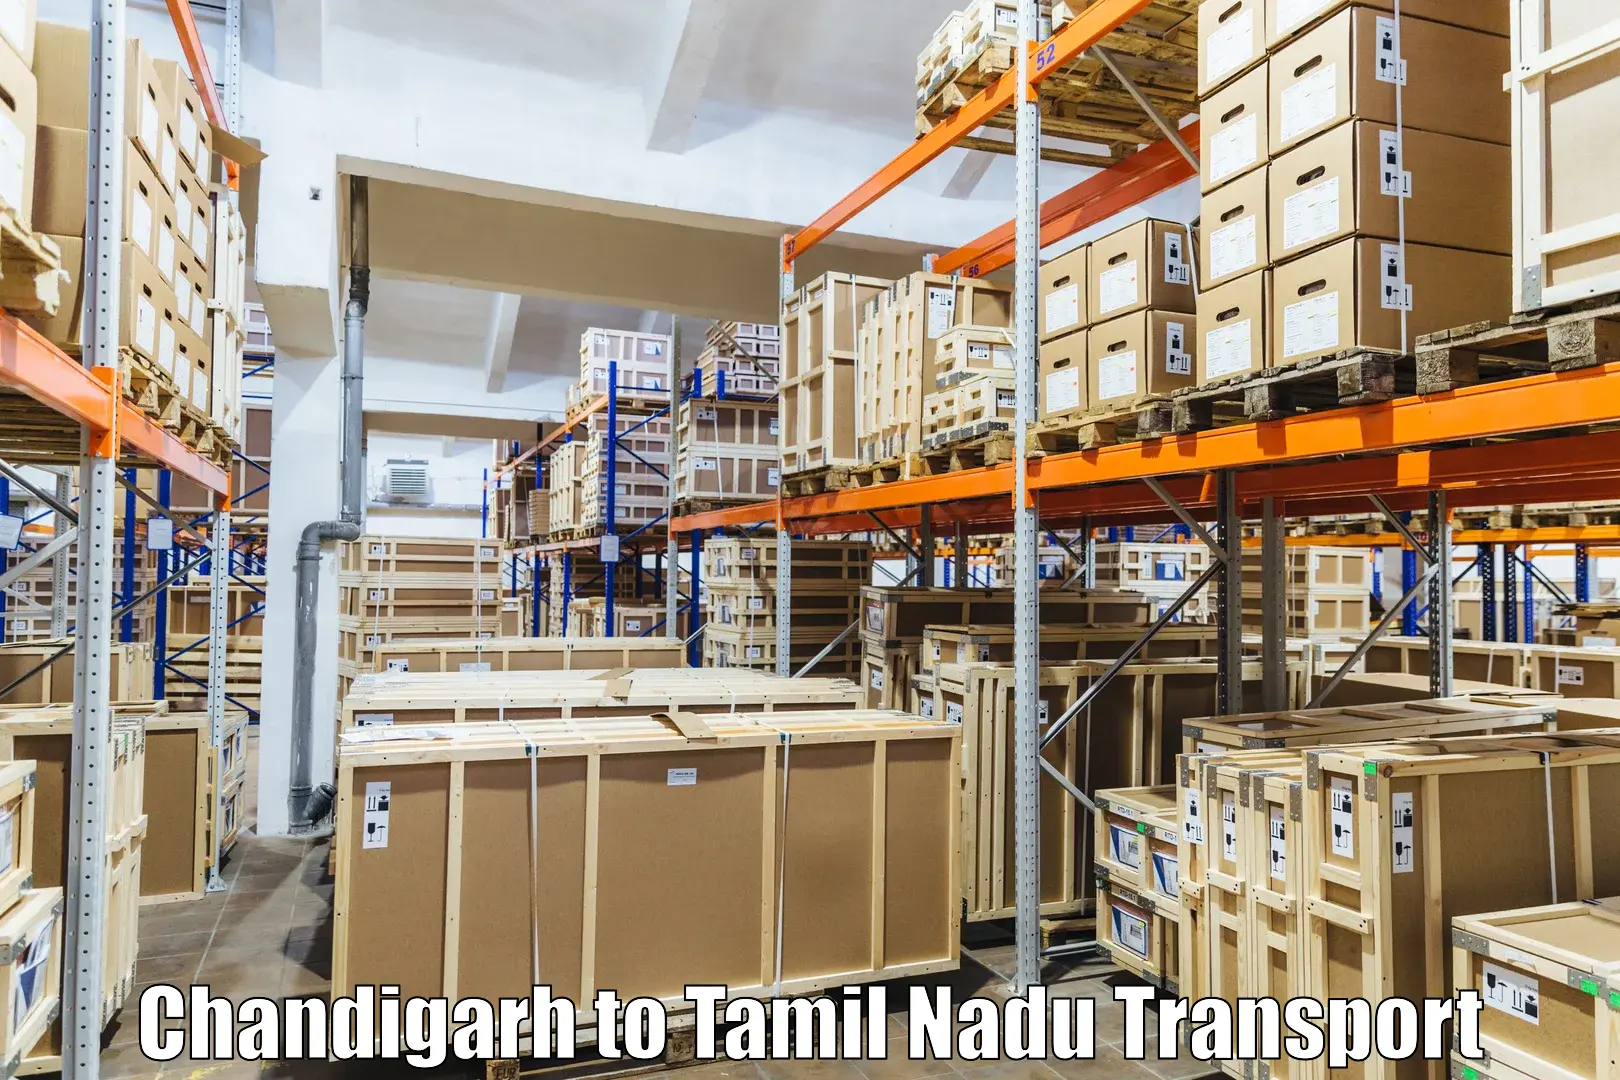 Shipping partner Chandigarh to Ramanathapuram